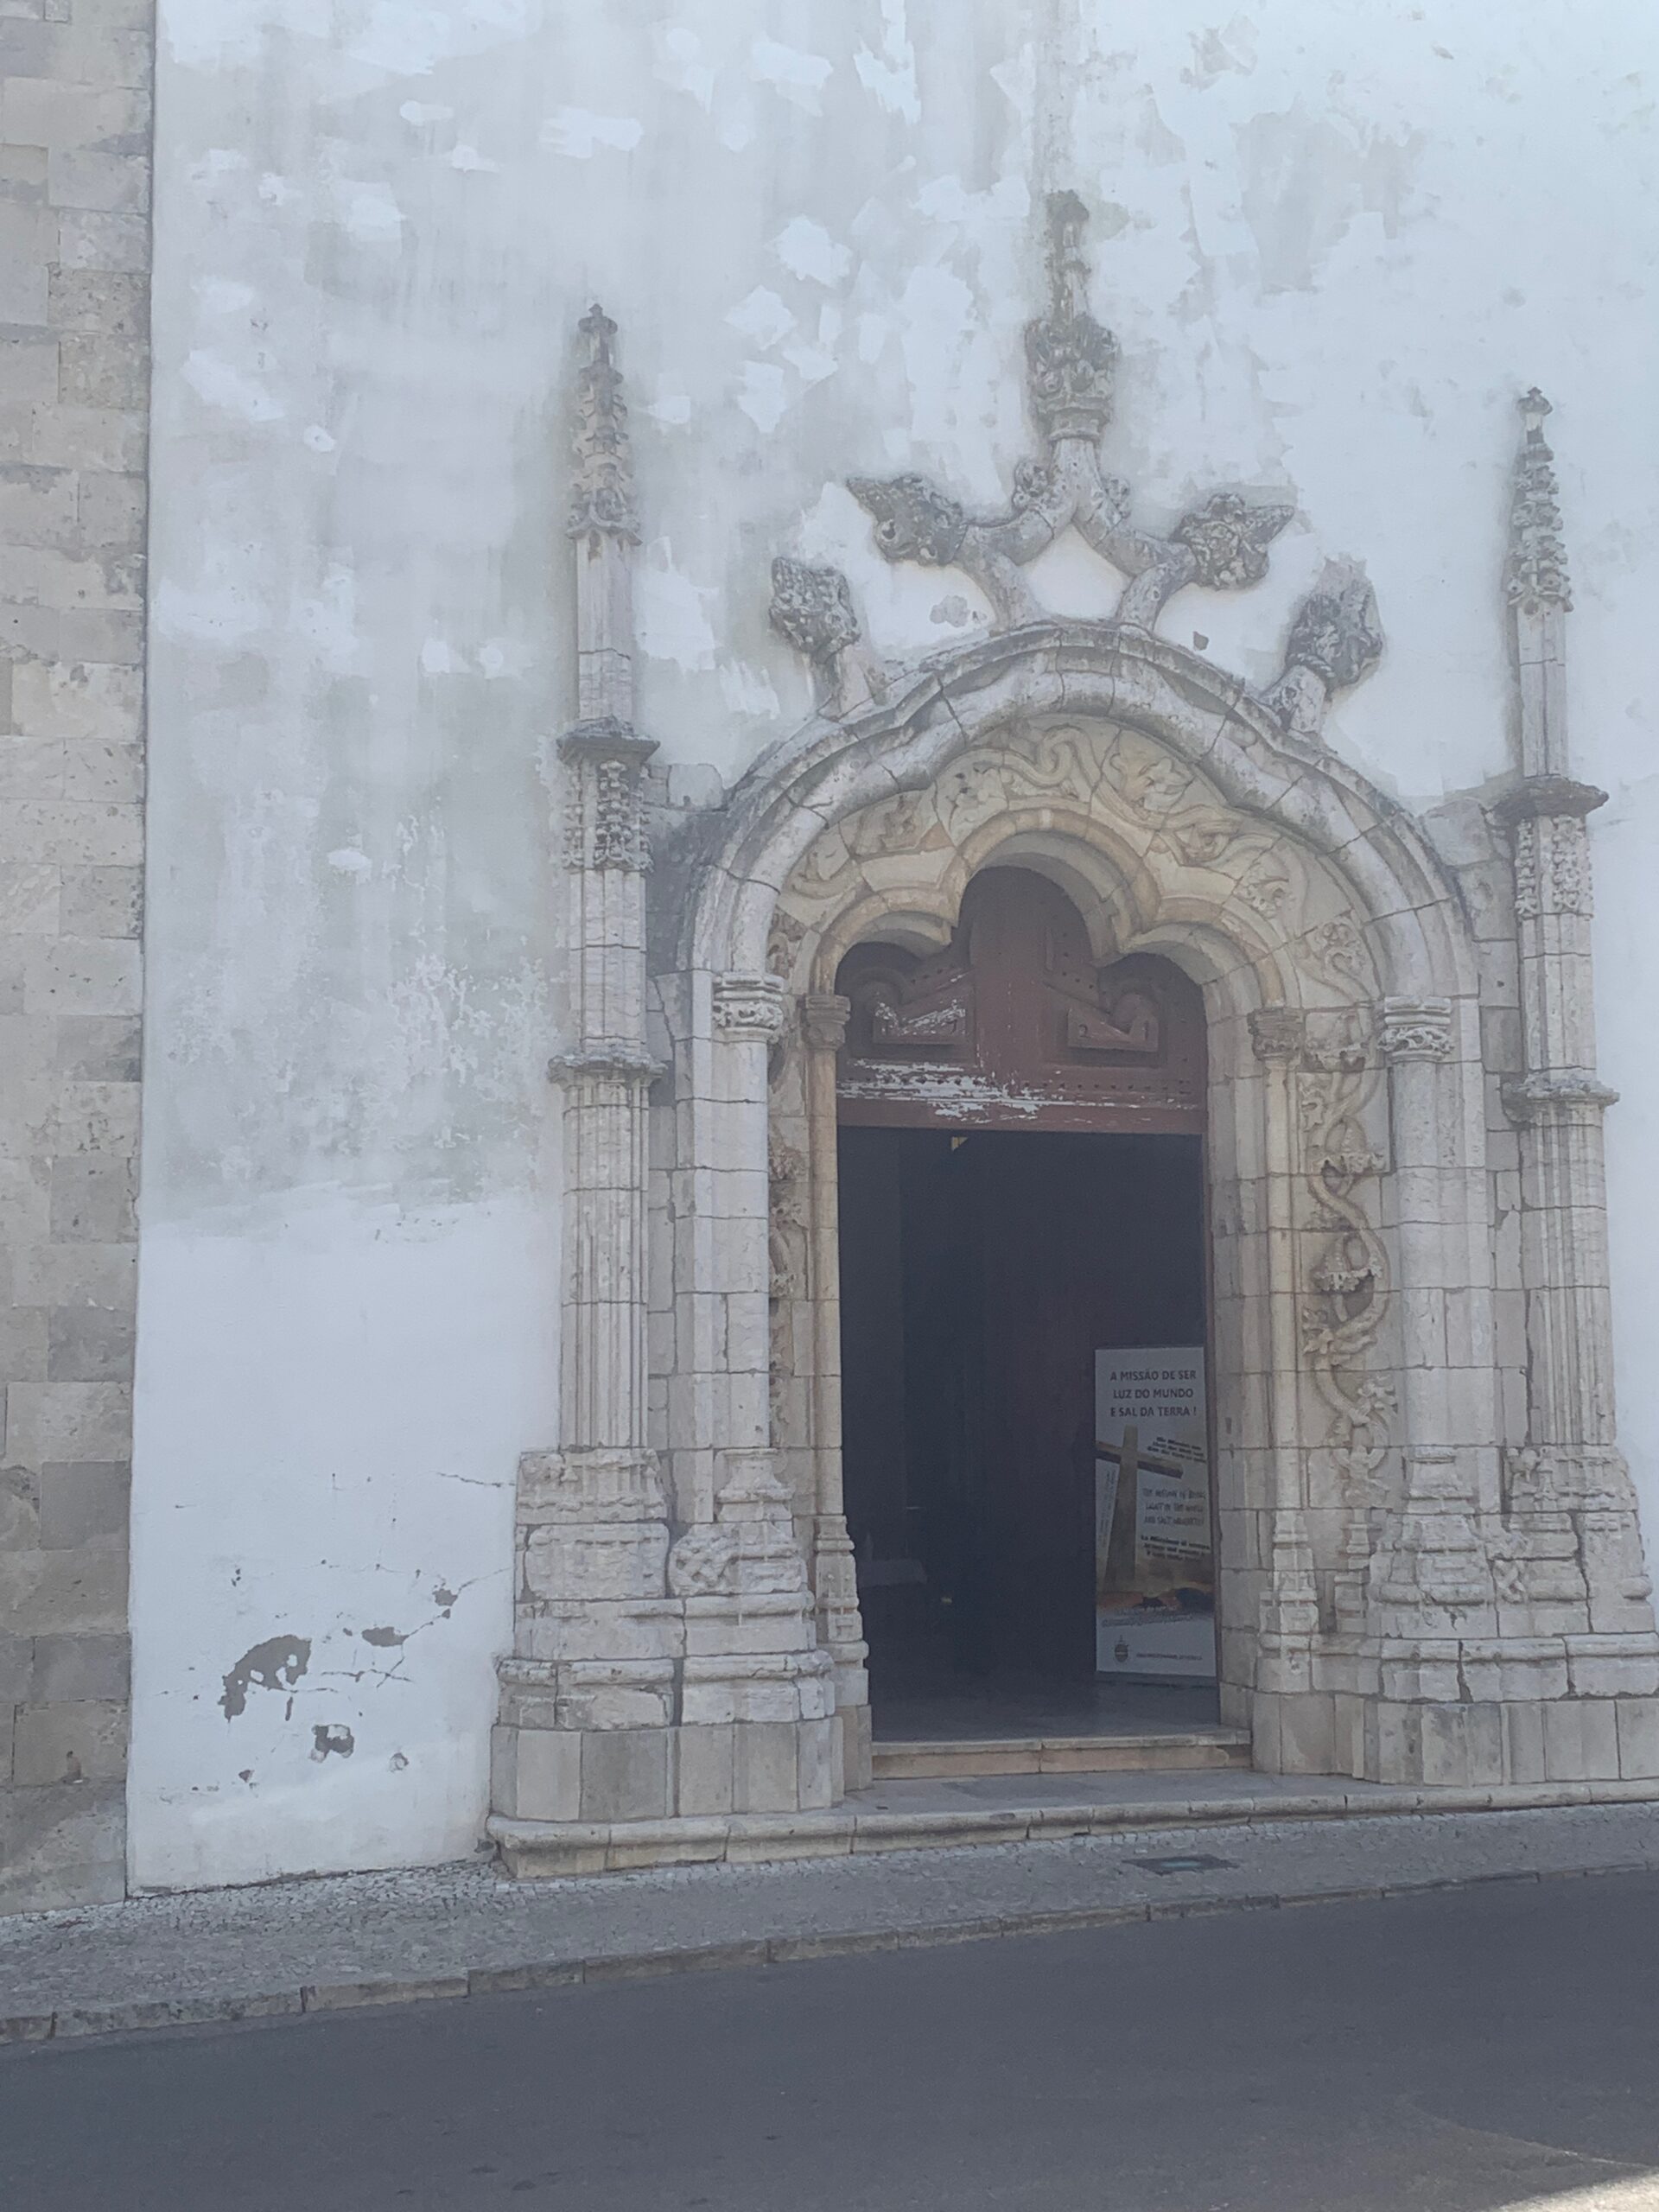 Magnificent Gothic portal at Santa Maria de Marvila.